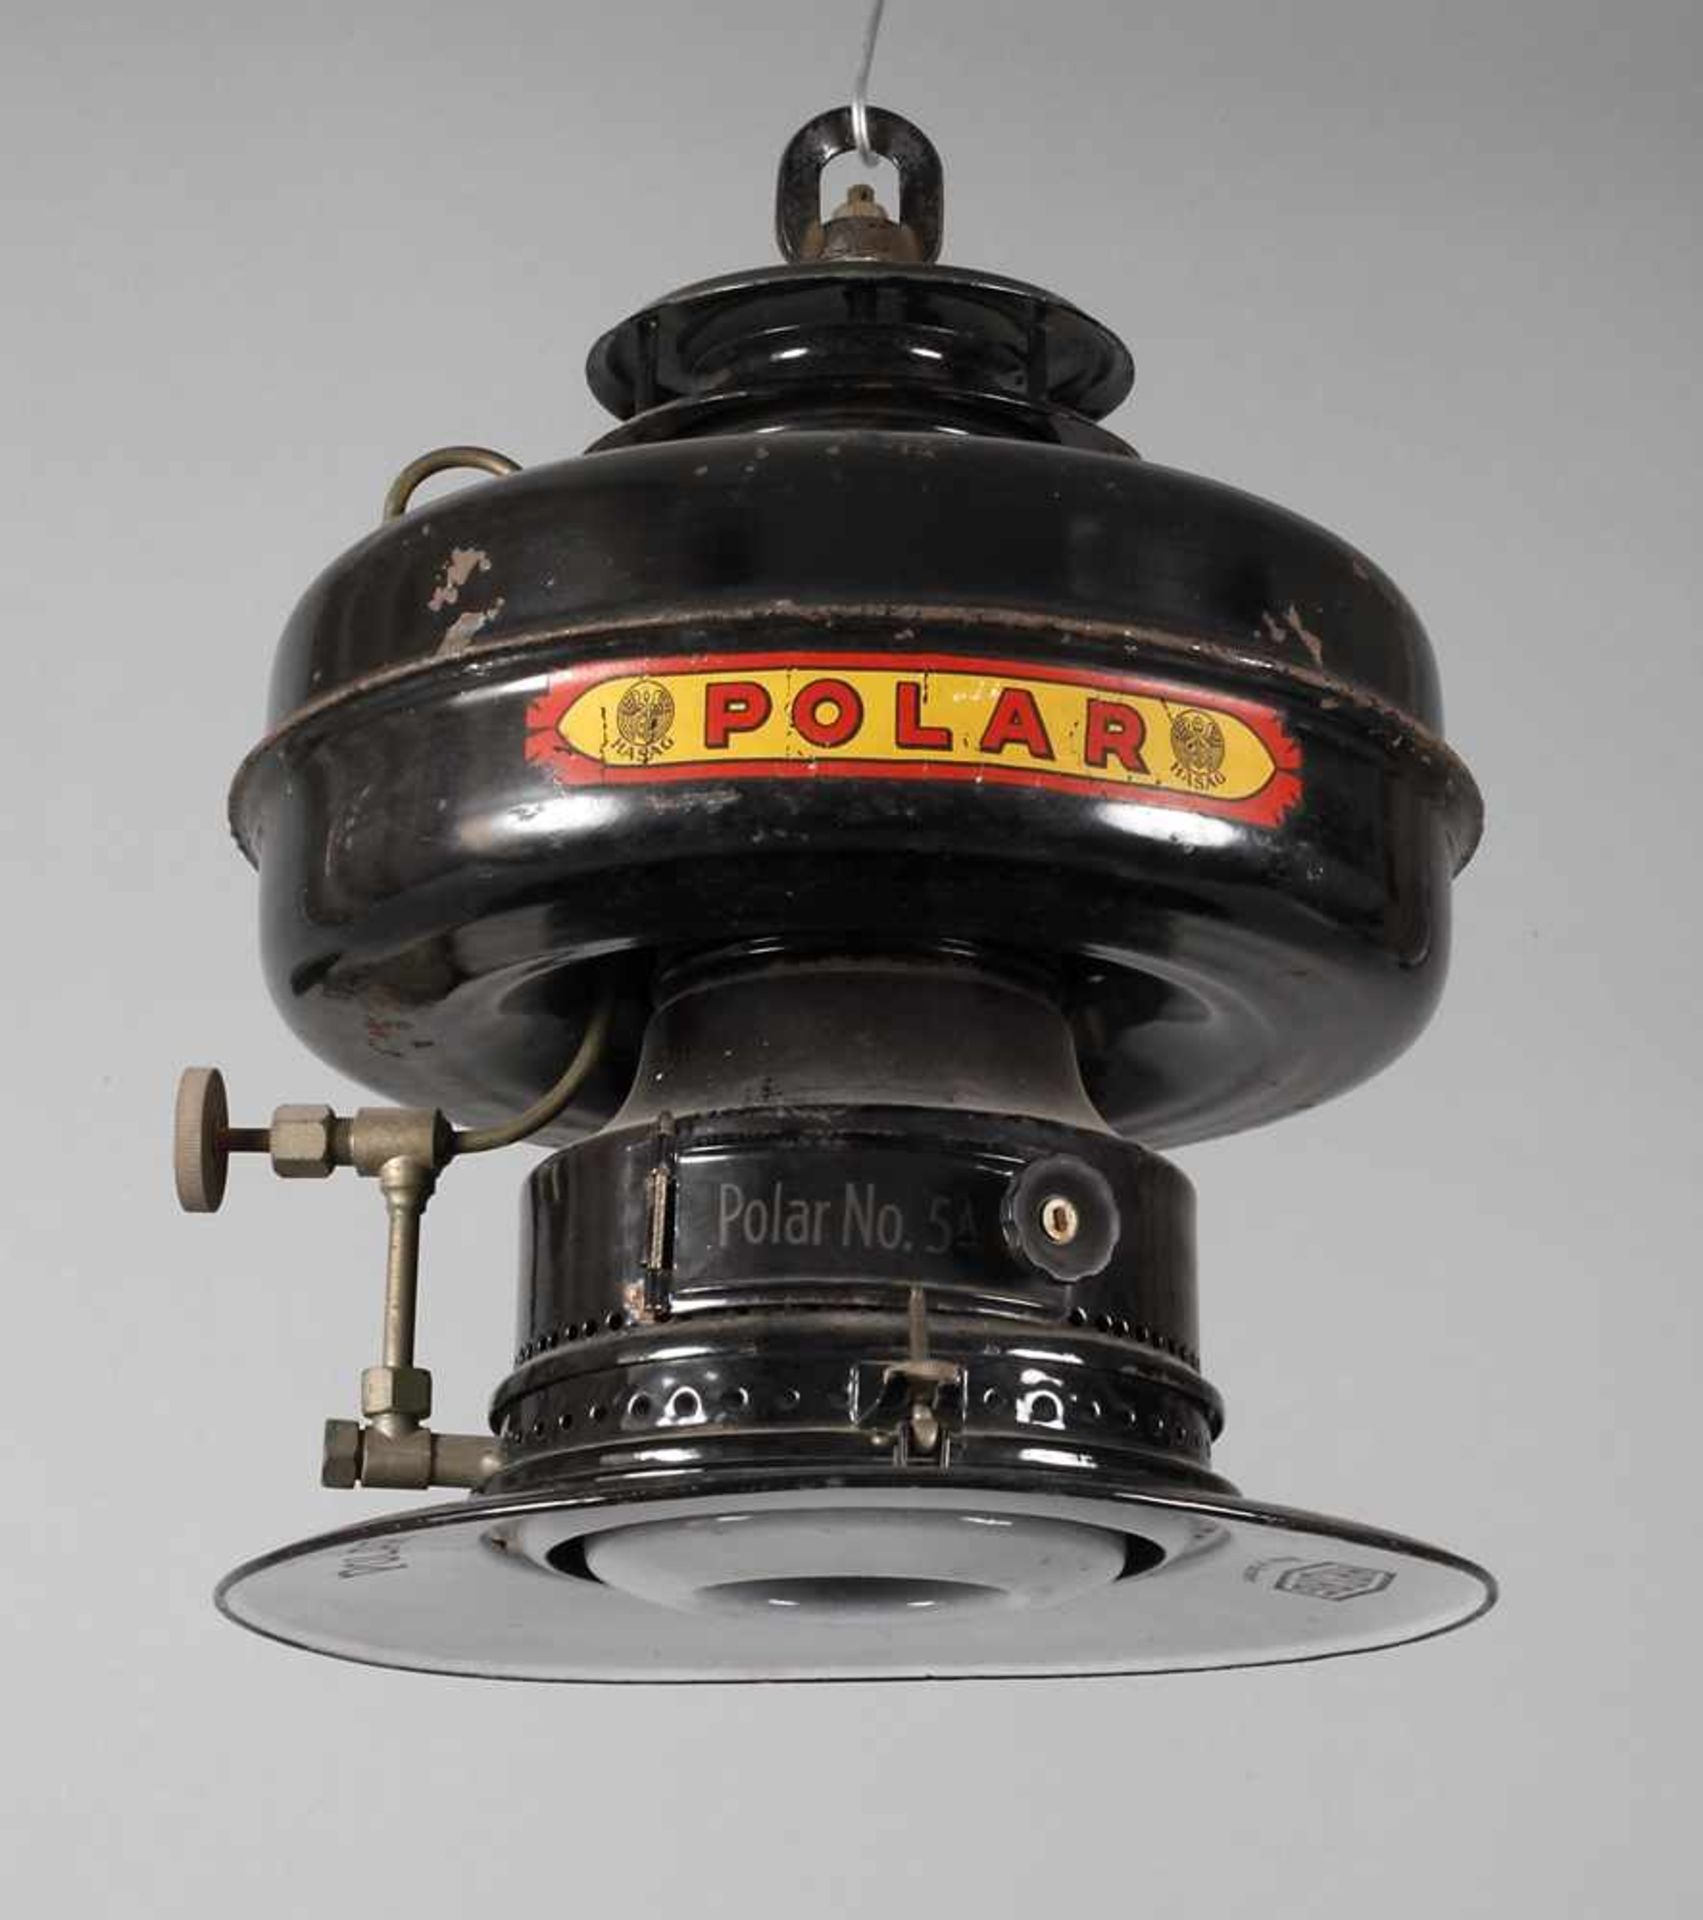 Lampe Hasag Polarum 1910, gemarkt Hasag Polar, Made in Germany, geschwärztes Metallgehäuse, ohne